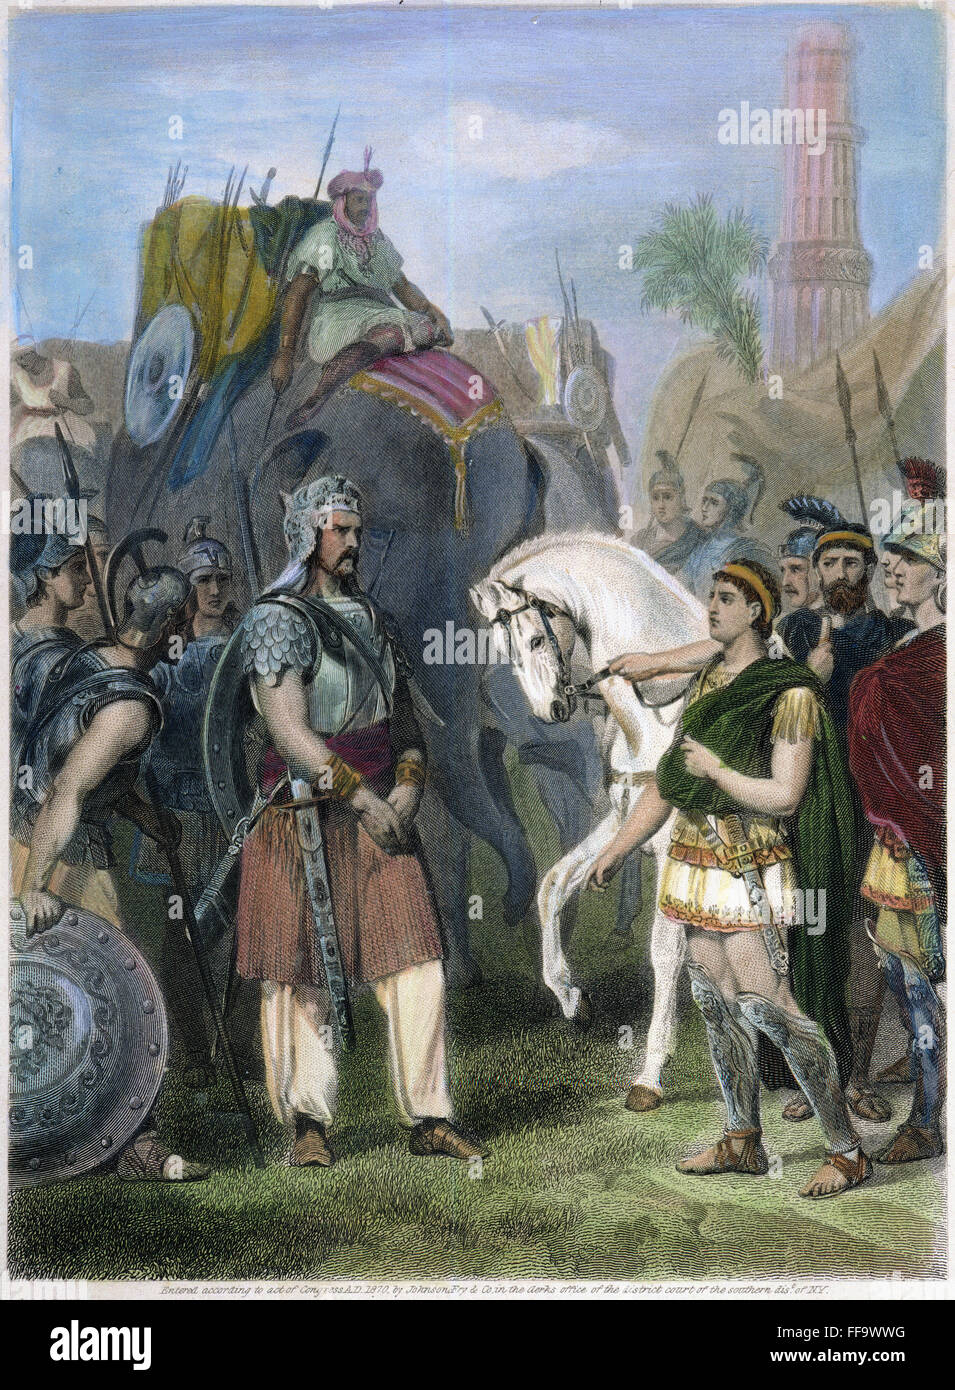 ALEXANDER der große/n (356-323 v. Chr.). König von Makedonien. Alexander nimmt die Kapitulation des Poros, König der nördlichen Punjab Region, nach dem Sieg über seine große Armee in der Schlacht von Hydaspes, 326 v. Chr. amerikanischen Stahlstich 1870. Stockfoto